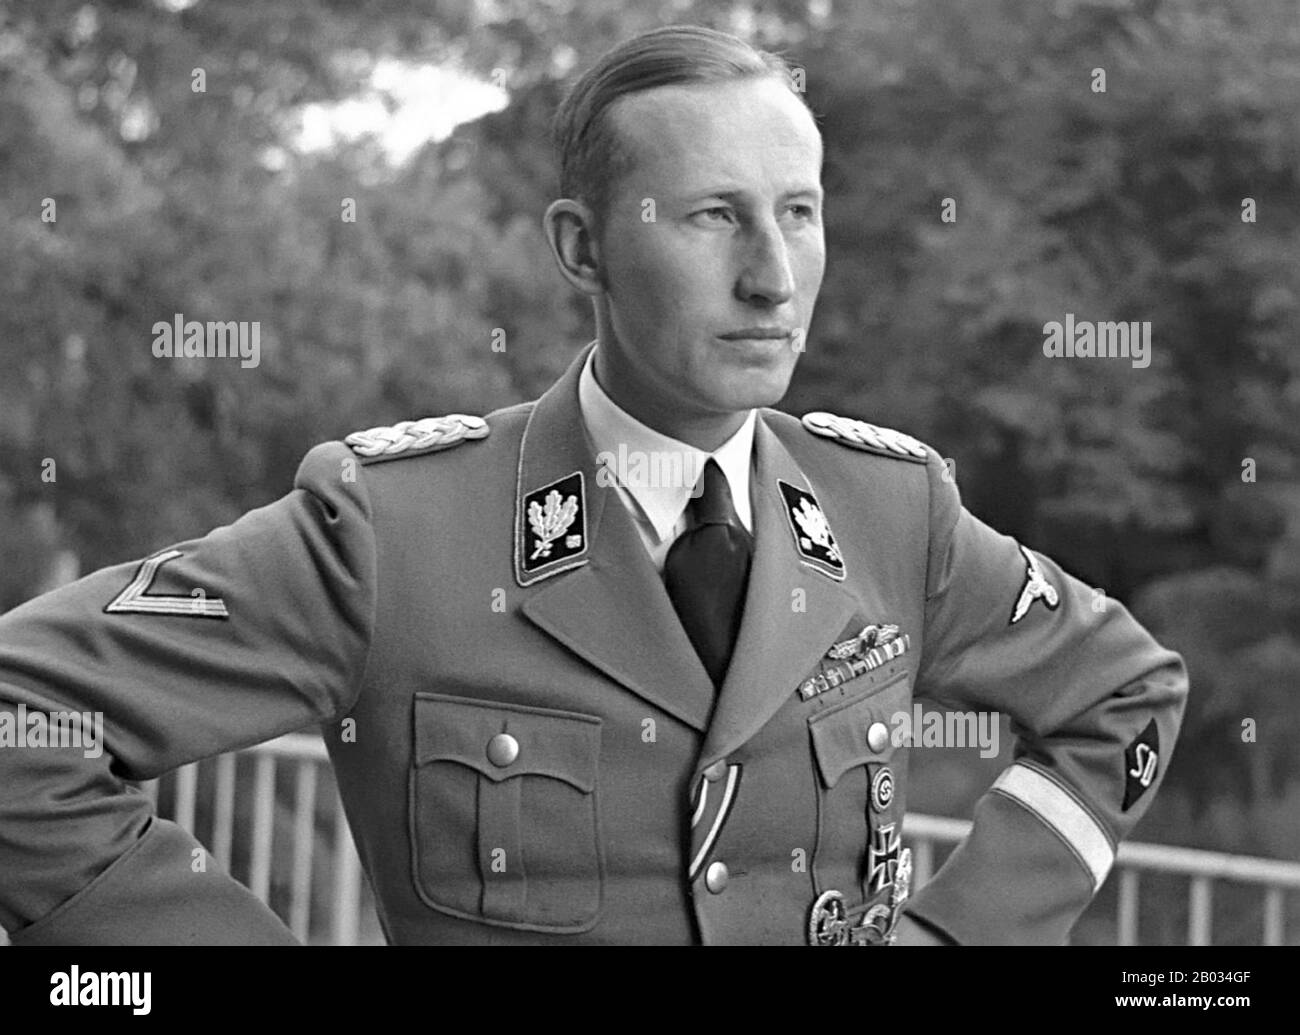 Reinhard Tristan Eugens Heydrich (7. März 1904/05 - 4. Juni 1942) war ein hoher deutscher NS-Funktionär während des zweiten Weltkriegs und einer der Hauptarchitekten des Holocausts. Er war SS-Obergruppenführer und General der Polizei (Obergruppenführer und Polizeichef) sowie Reichssicherheitshauptamt (einschließlich der Gestapo, Kripo und SD). Er war auch Stellvertreter-Reichsprotektor (stellvertretender/Amtierender Reichsprotektor) von Böhmen und Mähren, in der heutigen Tschechischen Republik. Heydrich leitete die Wannseekonferenz vom Januar 1942, die die Pläne für die Endgültige Lösung des formalisierte Stockfoto